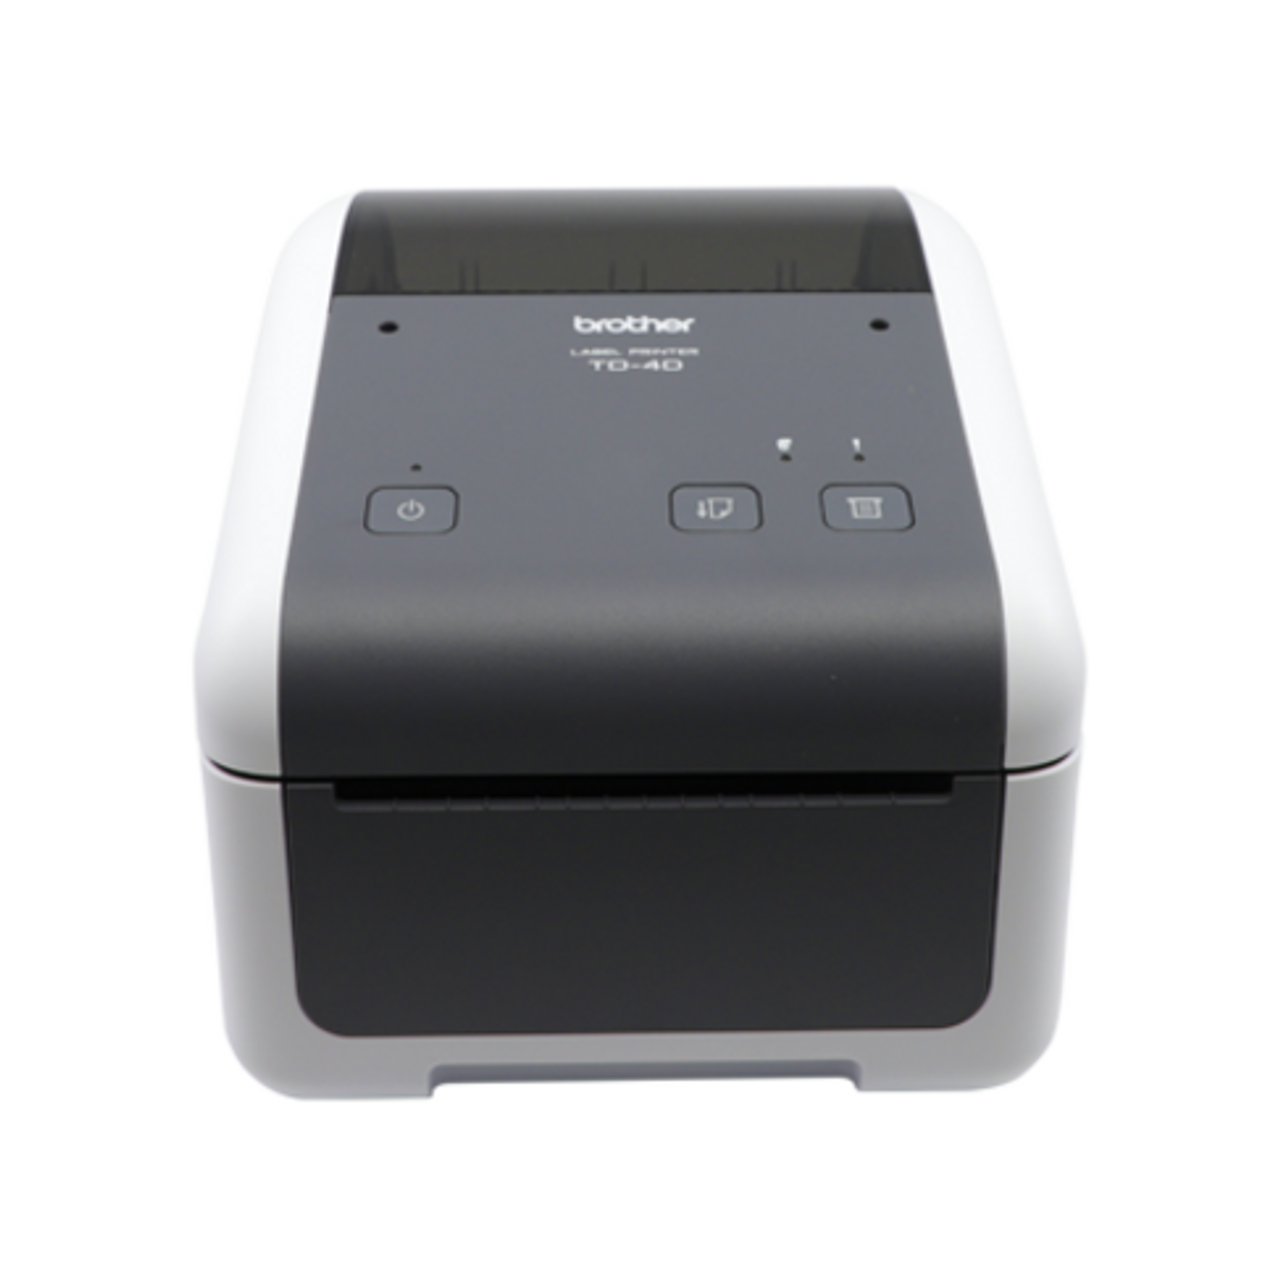 Buy Direct Thermal Printer Desktop Printer